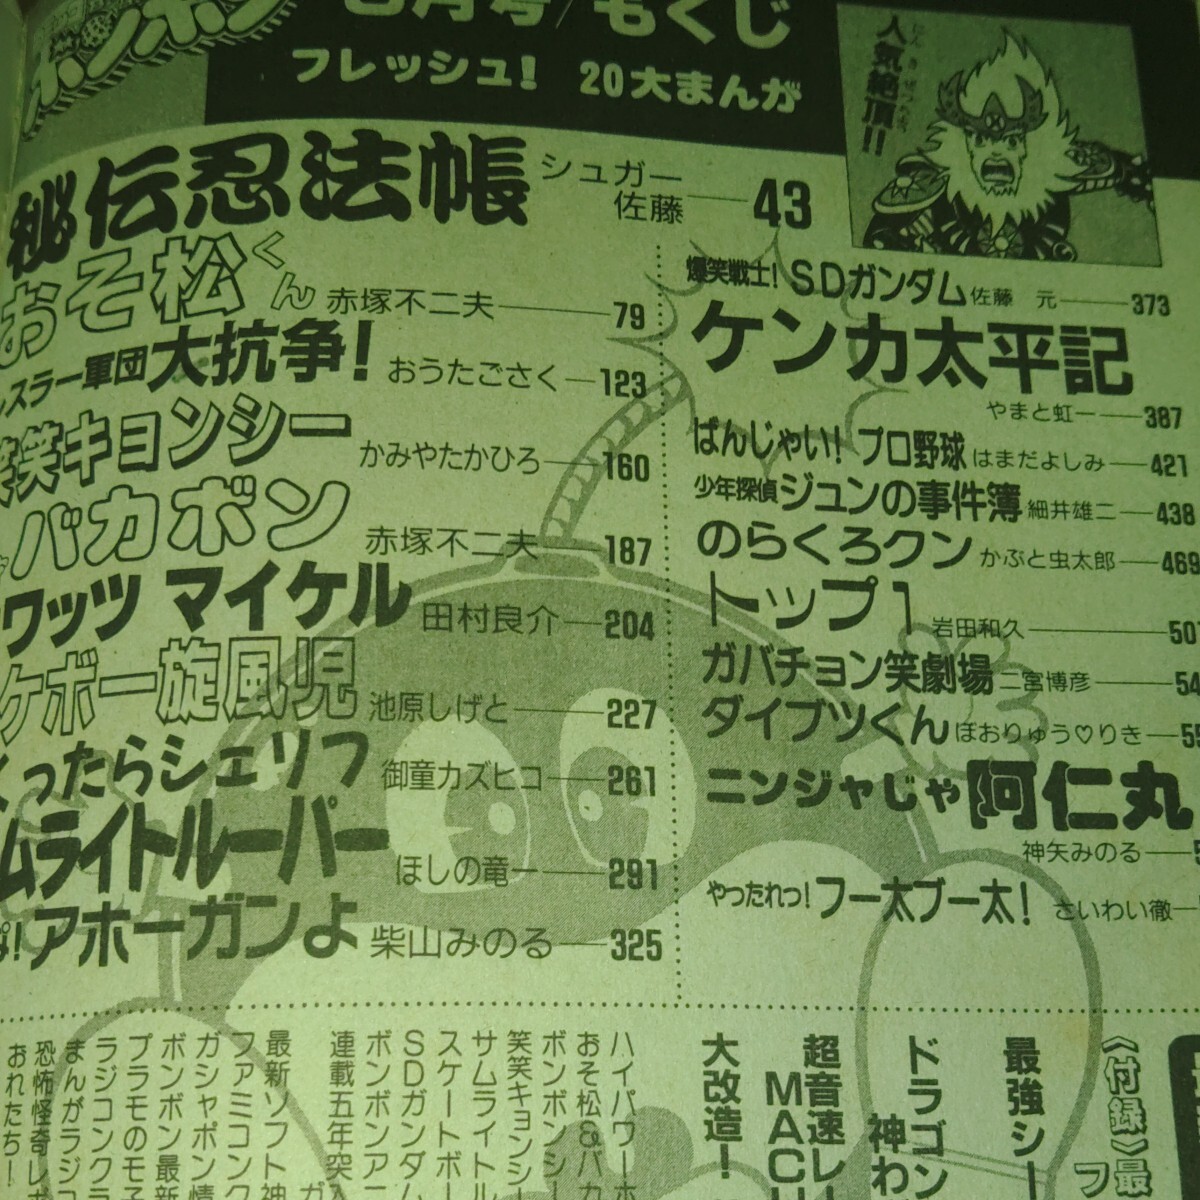 1988 год 5 месяц номер комикс бонбон .. фирма .. сосна kun Genius Bakabon ho watsu Michael . смех воитель!SD Gundam подлинная вещь Showa Retro 